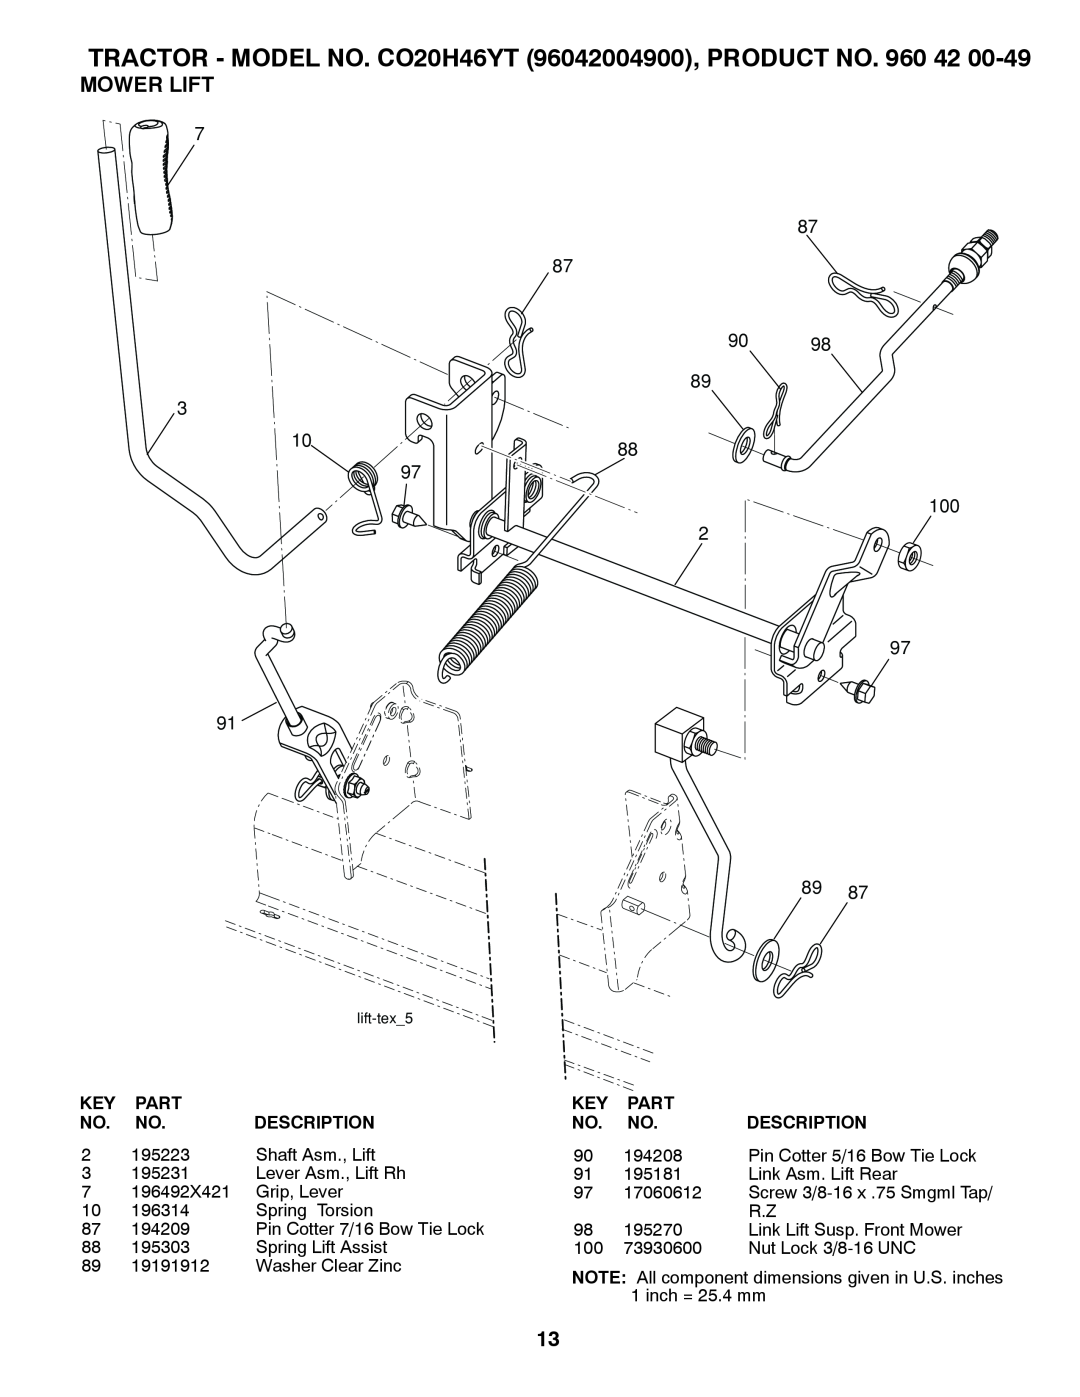 Poulan 412525 manual Mower Lift, 9098, TRACTOR - MODEL NO. CO20H46YT 96042004900, PRODUCT NO. 960 42, Part, Description 